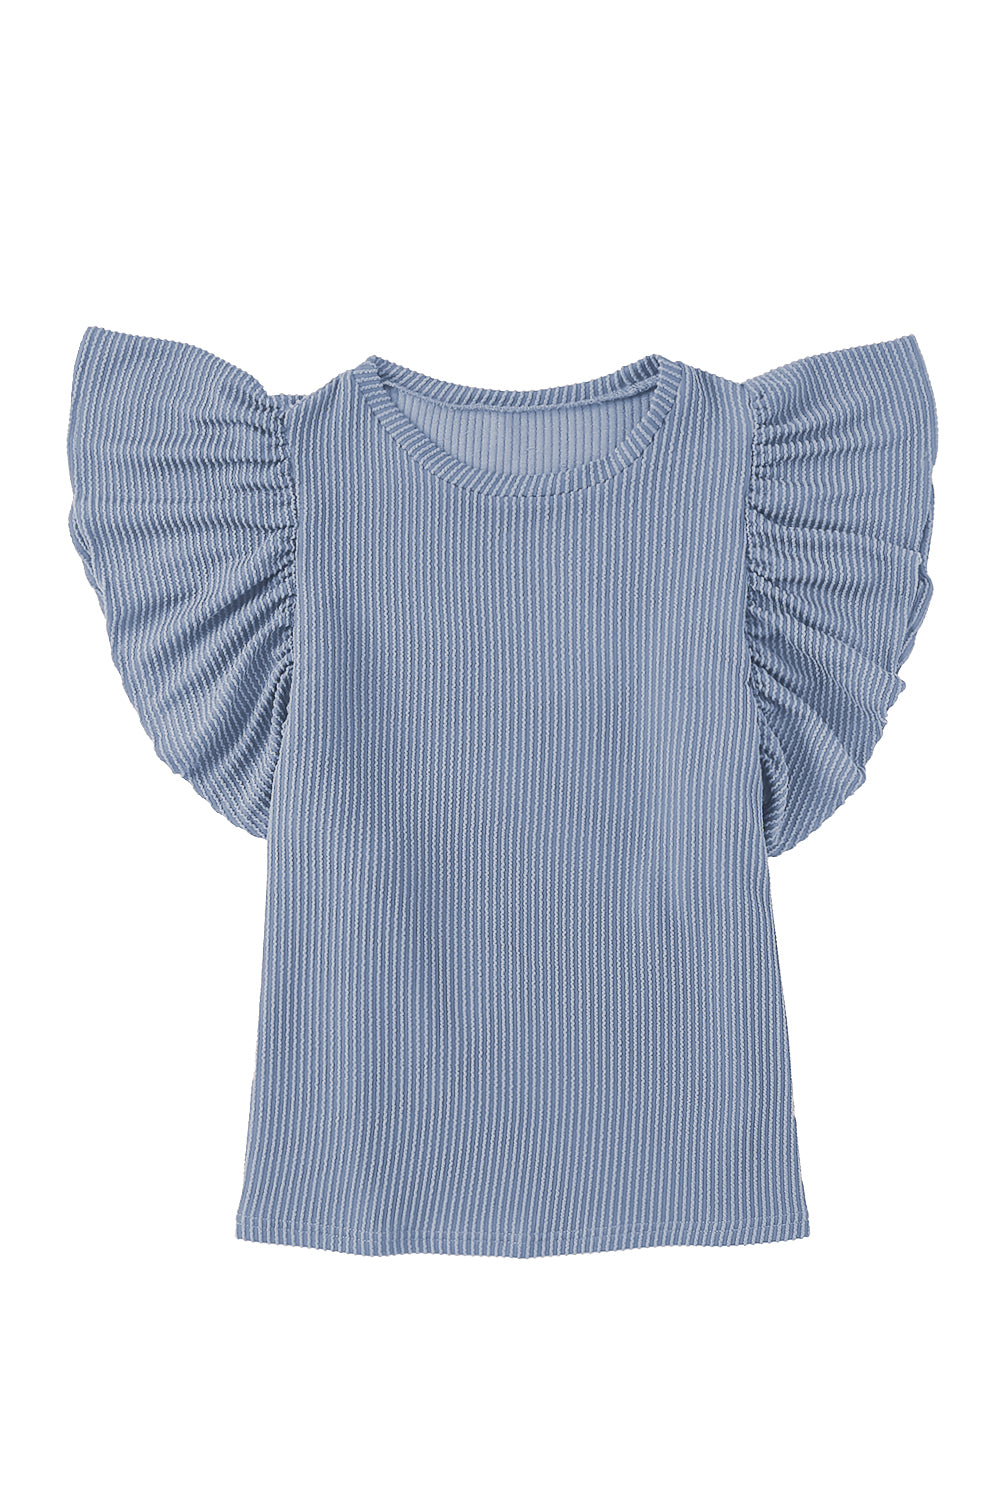 T-shirt a maniche corte con volant in maglia a coste azzurro cielo